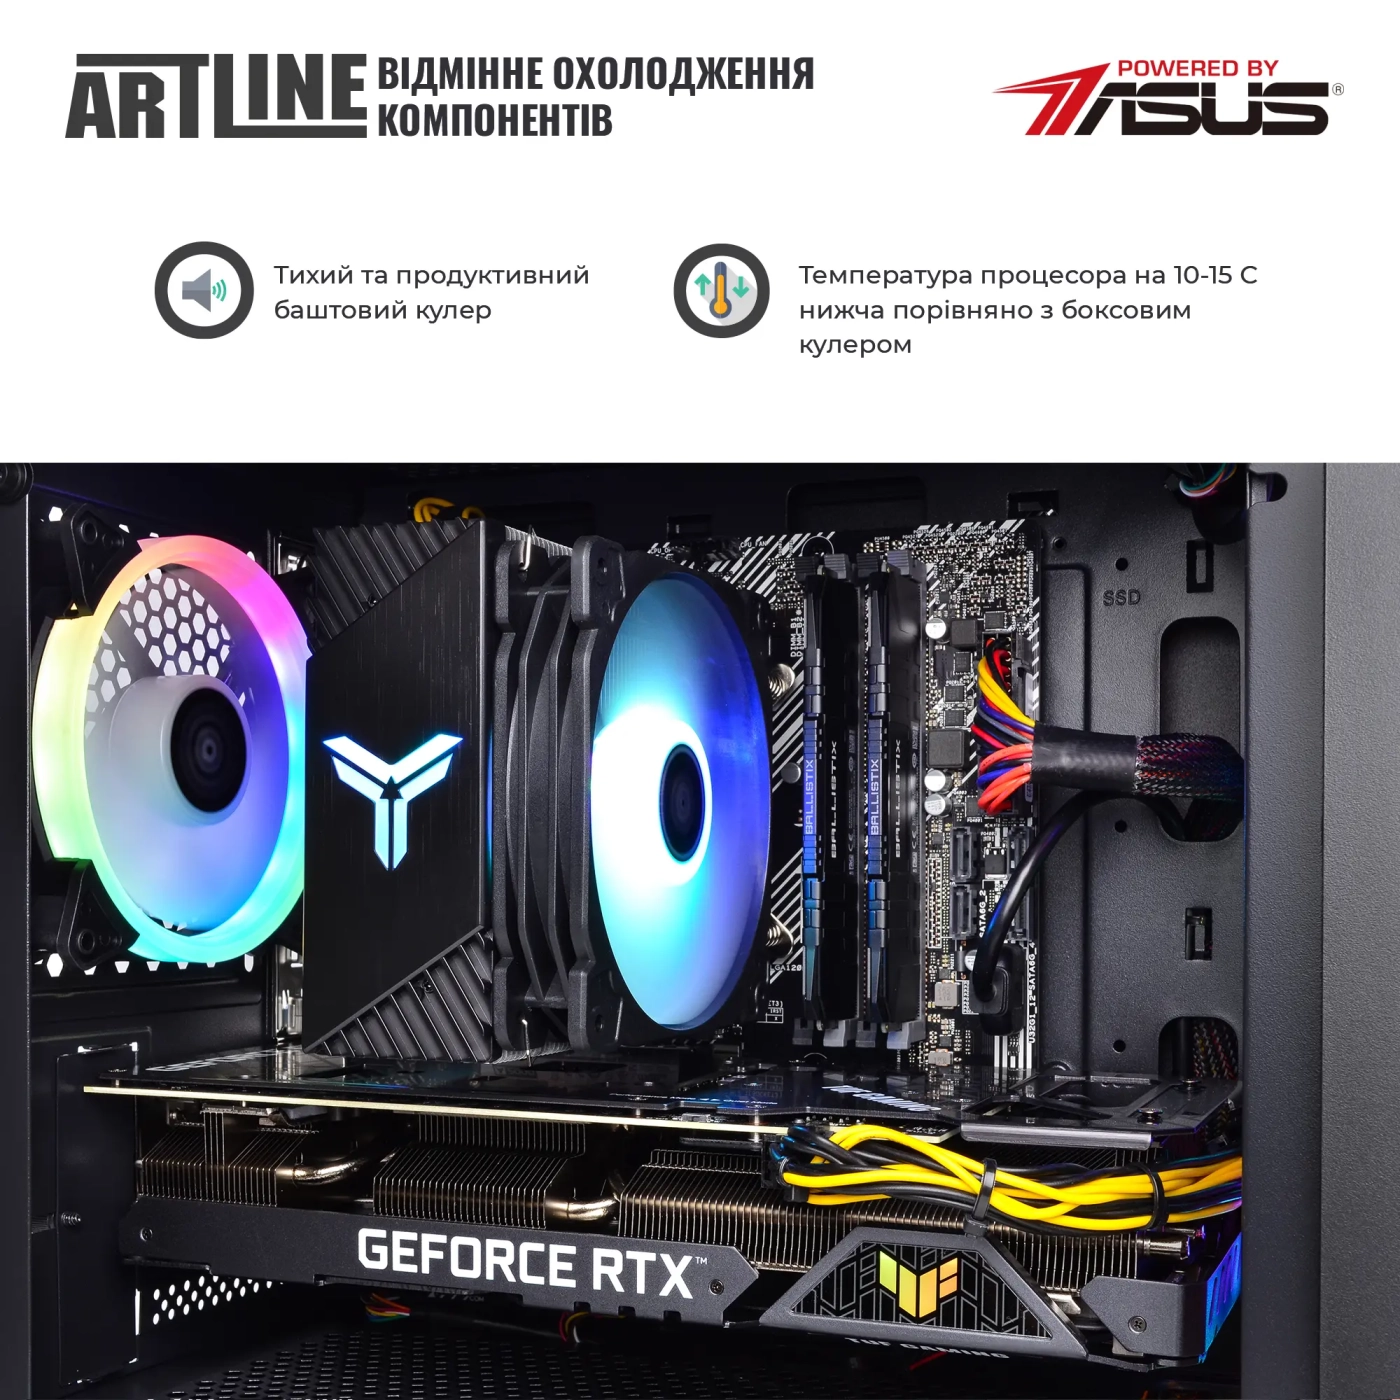 Купить Компьютер ARTLINE Gaming X75v72 - фото 5